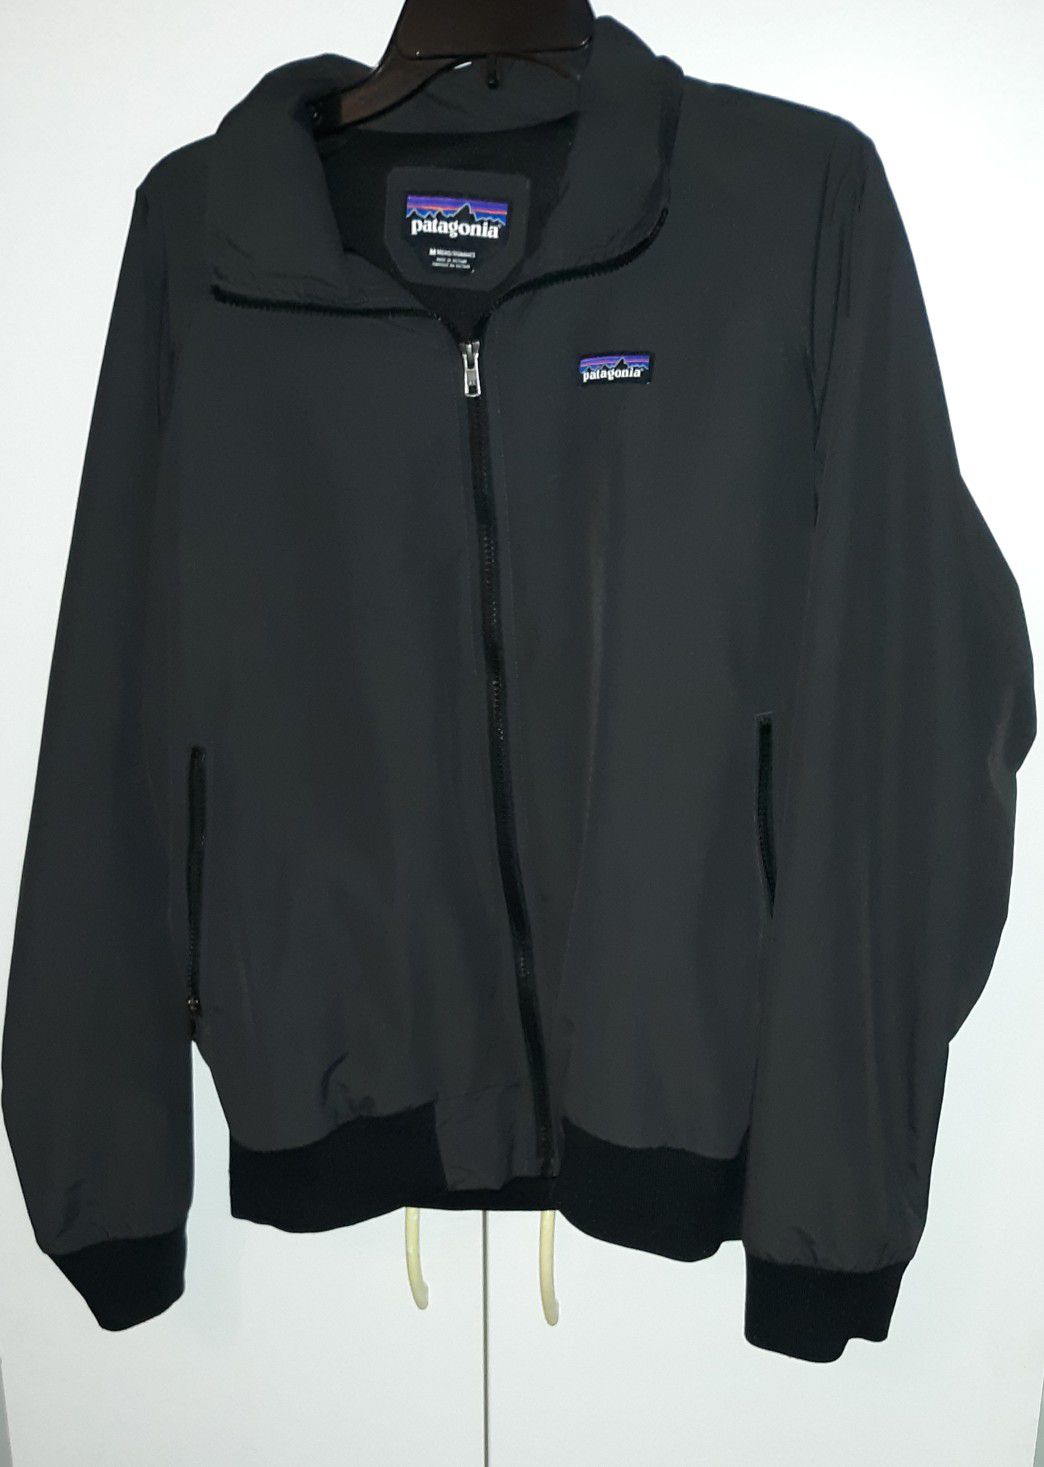 Men's Patagonia zip up jacket size medium